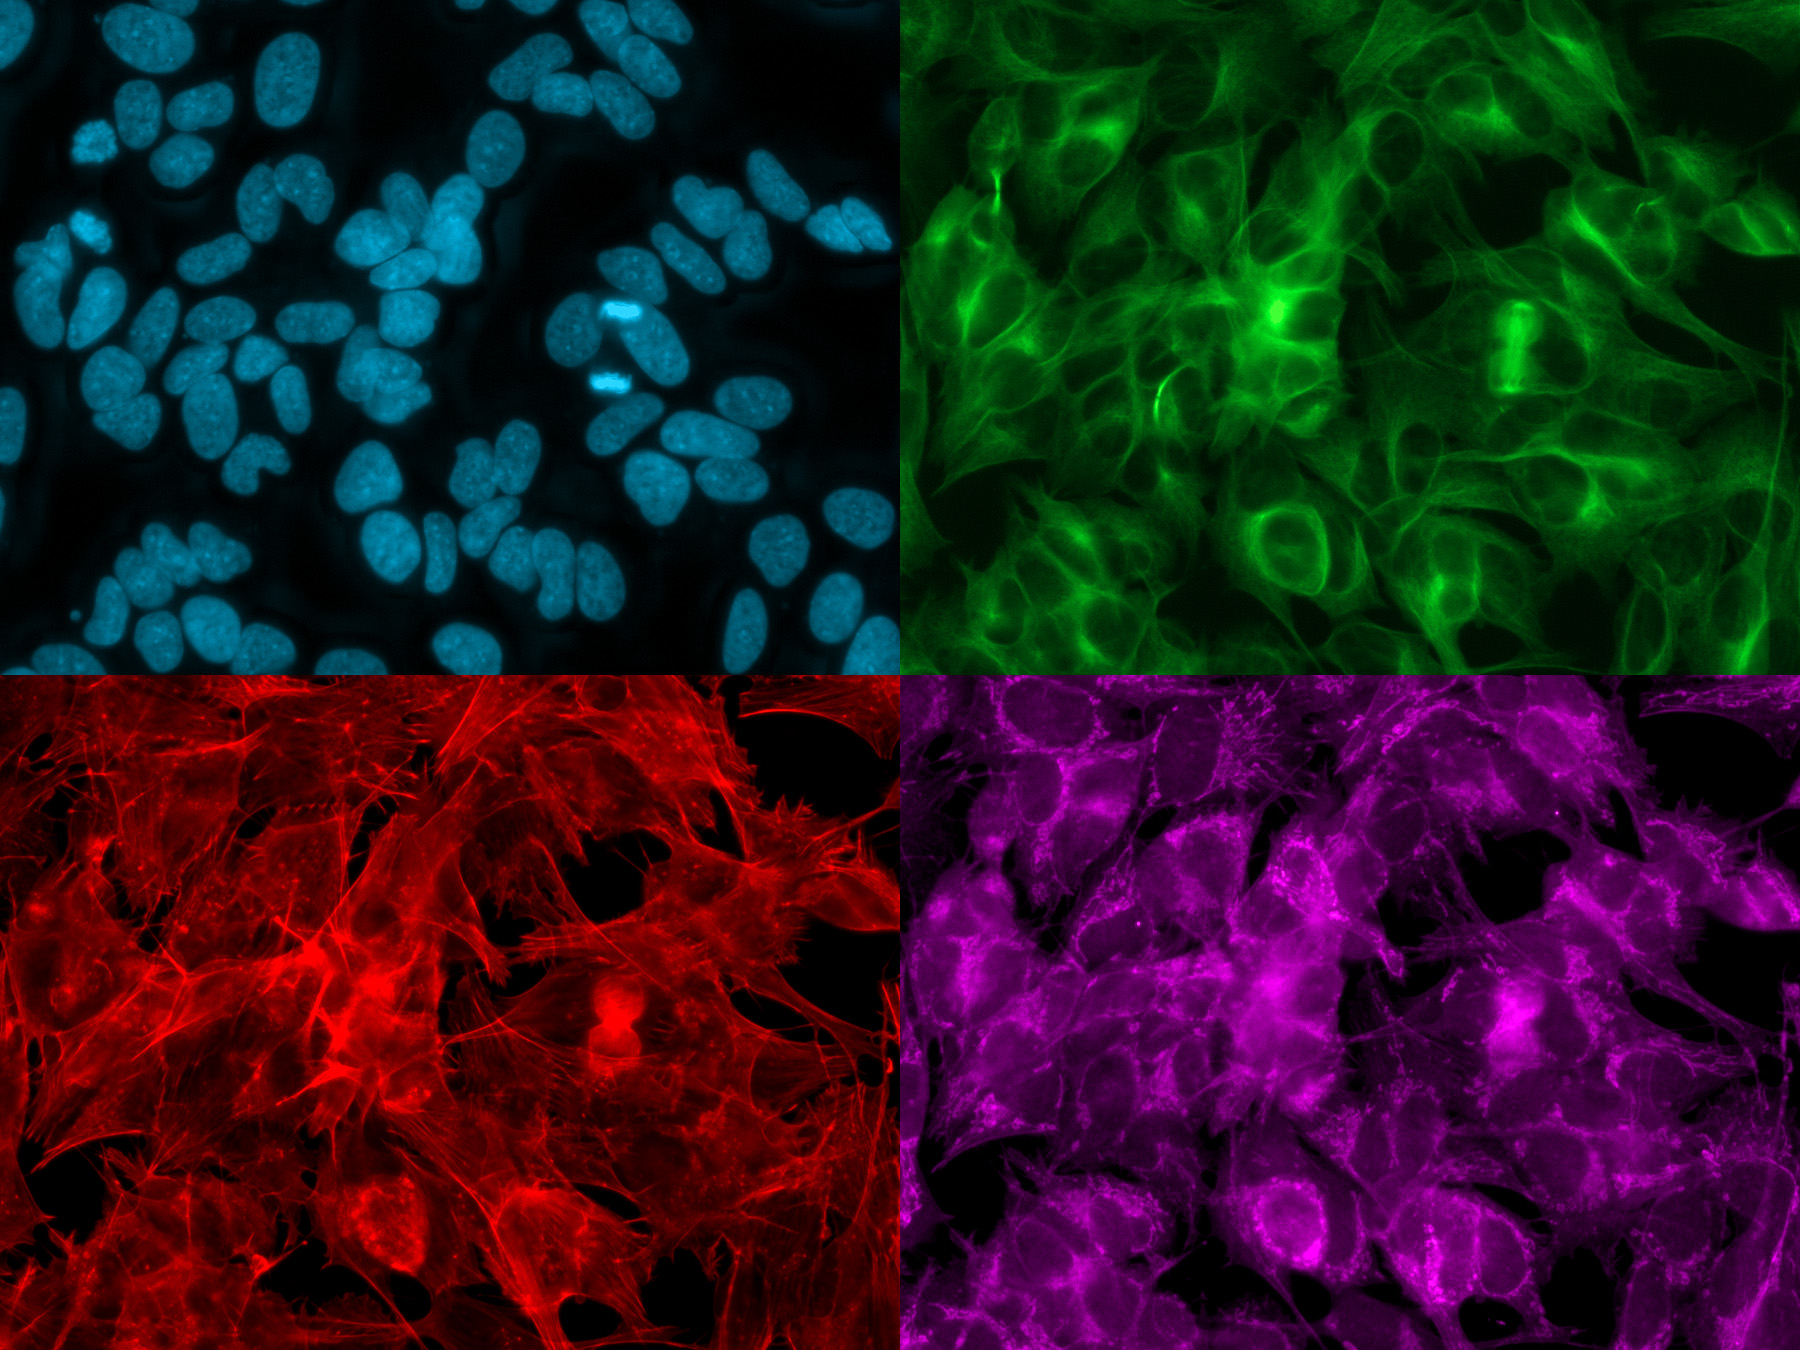 在384微孔板上进行SH-SY5Y细胞培养；在同一位置拍摄的多通道图像